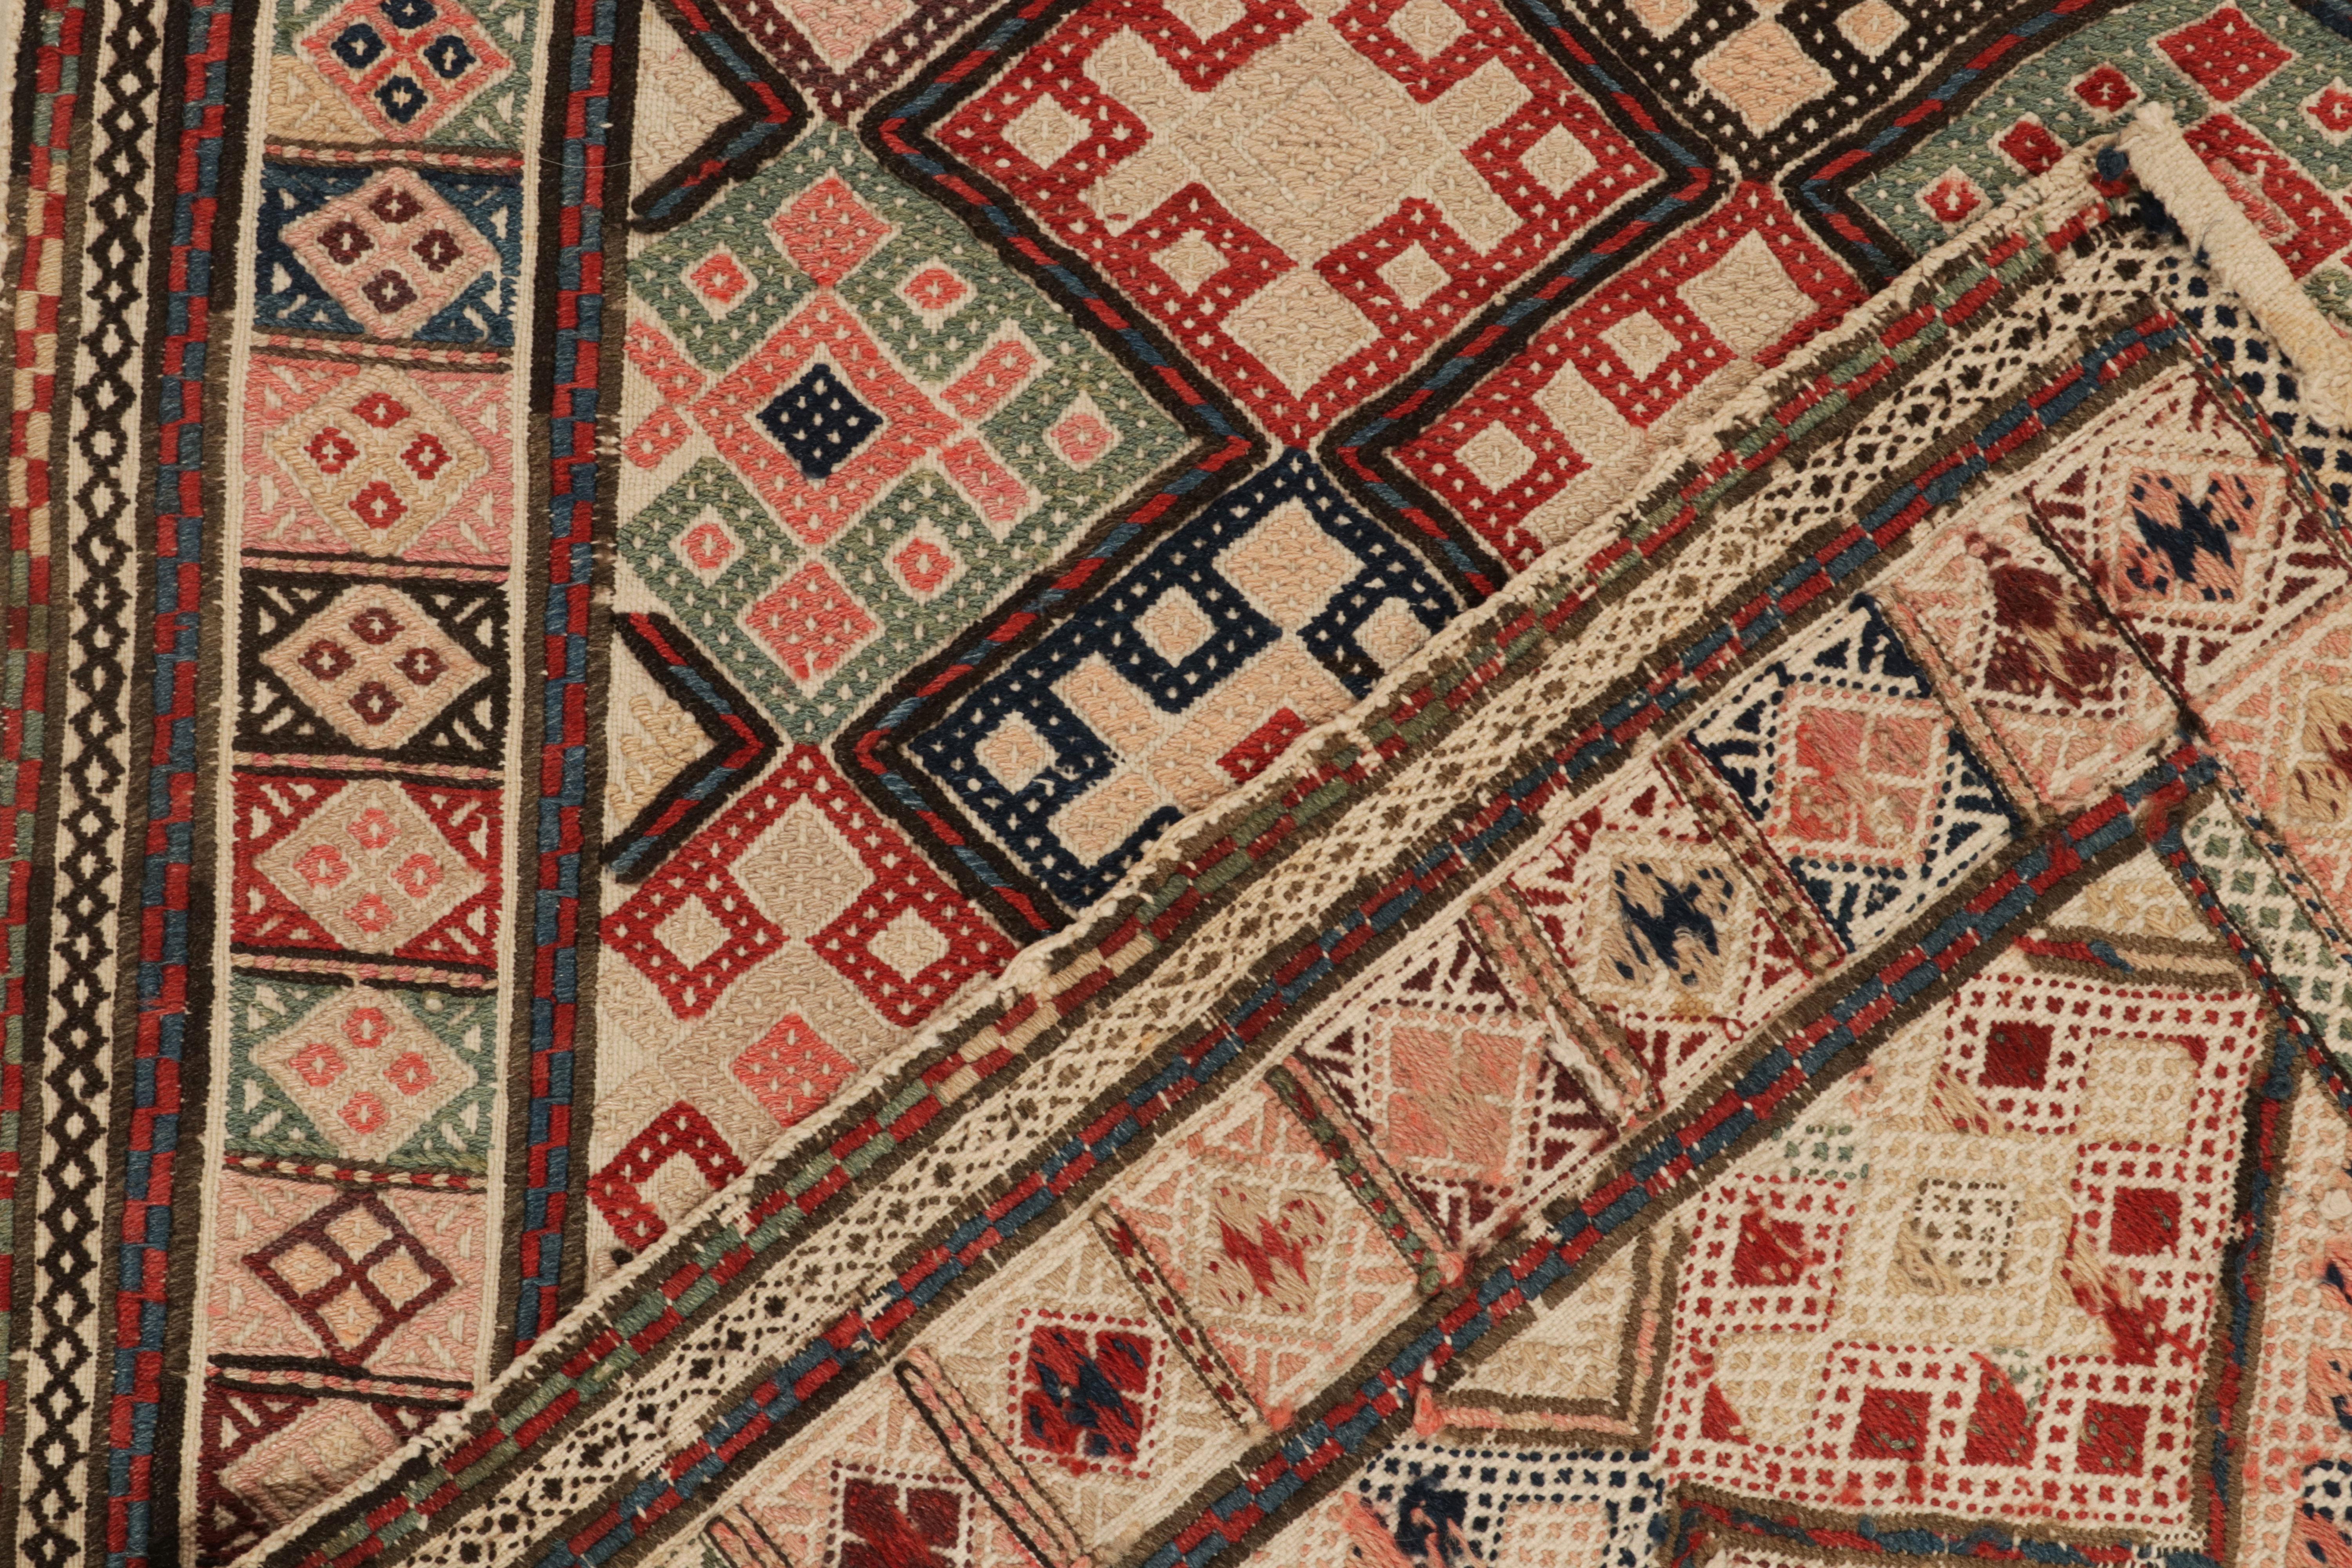 Vintage Turkish Kilim Rug in Beige, Pink Tribal Geometric Pattern by Rug & Kilim 1